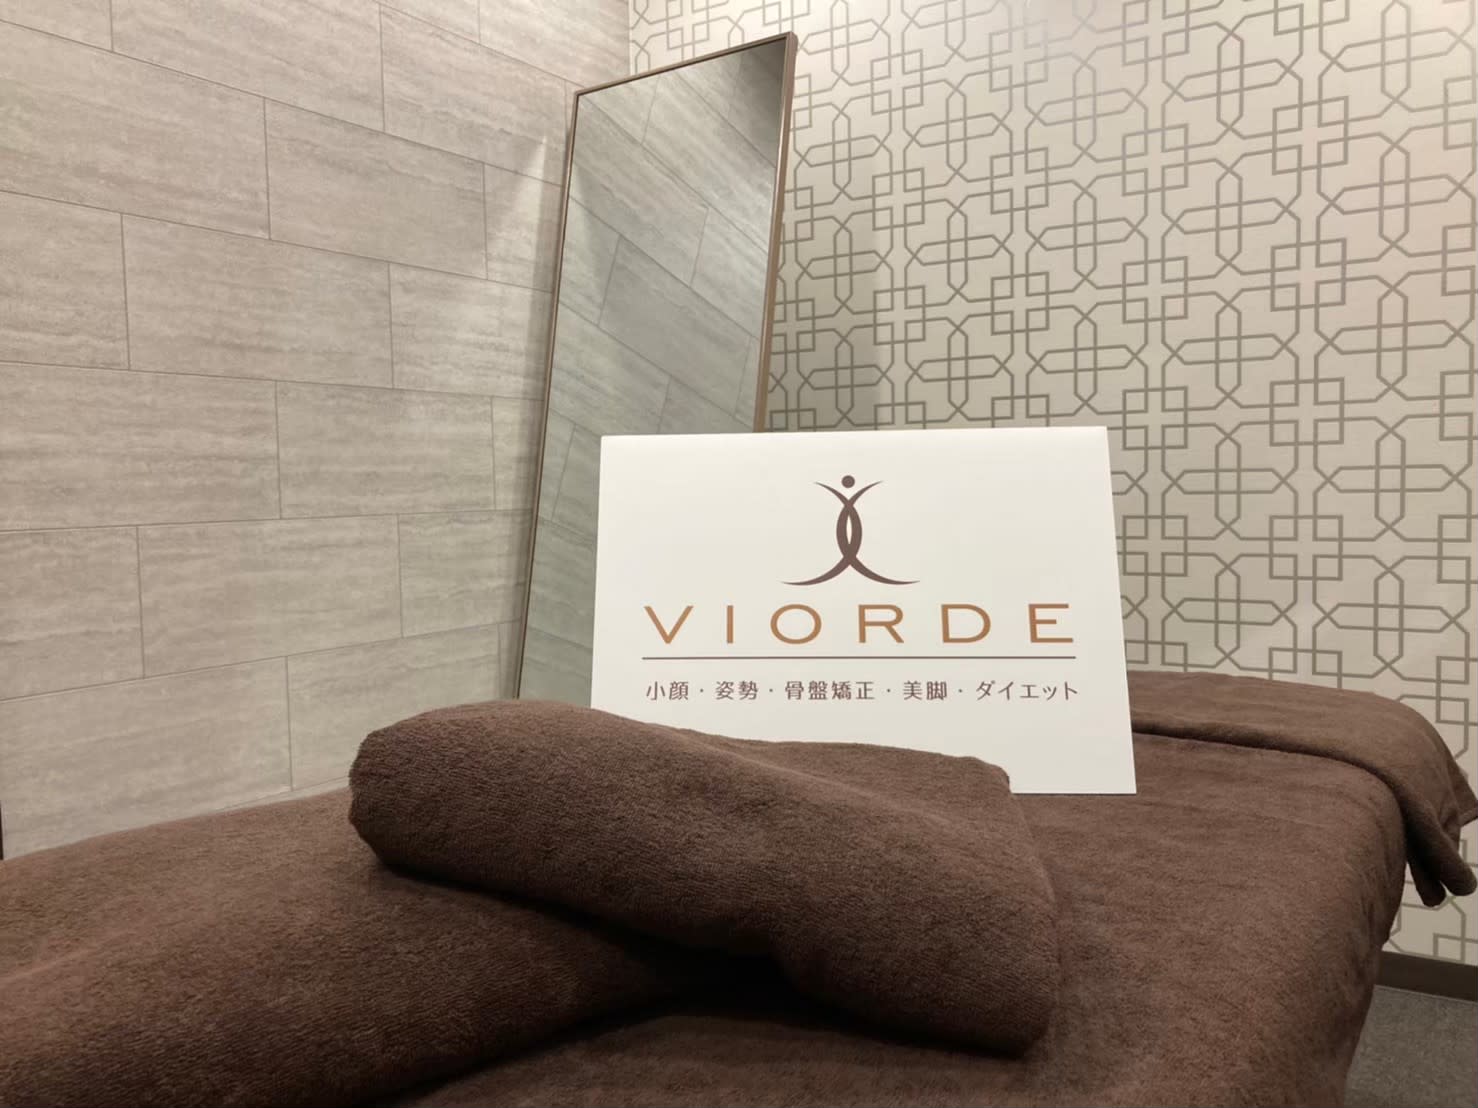 ヴィオーデ美容整体サロン 恵比寿店のアイキャッチ画像